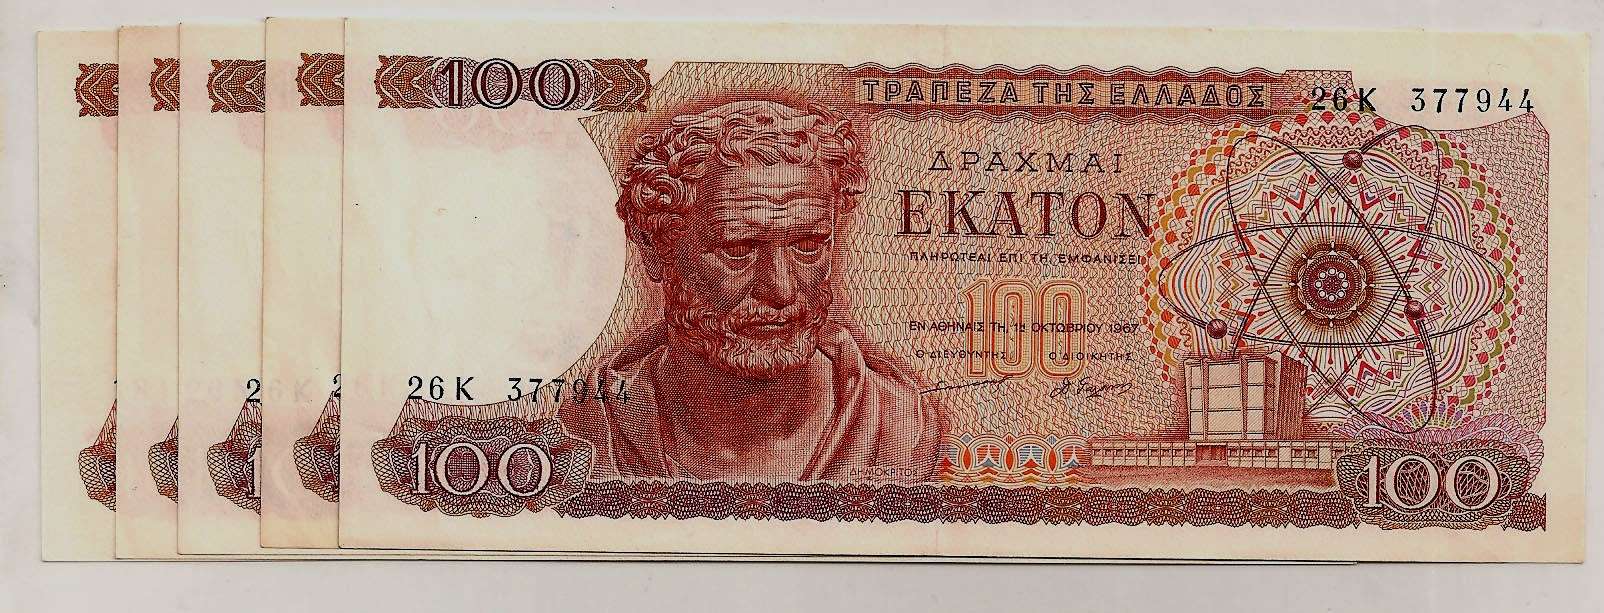 Παλιό χαρτονόμισμα των εκατό δραχμών (κατοστάρικο) με την μορφή του Αριστοτέλη